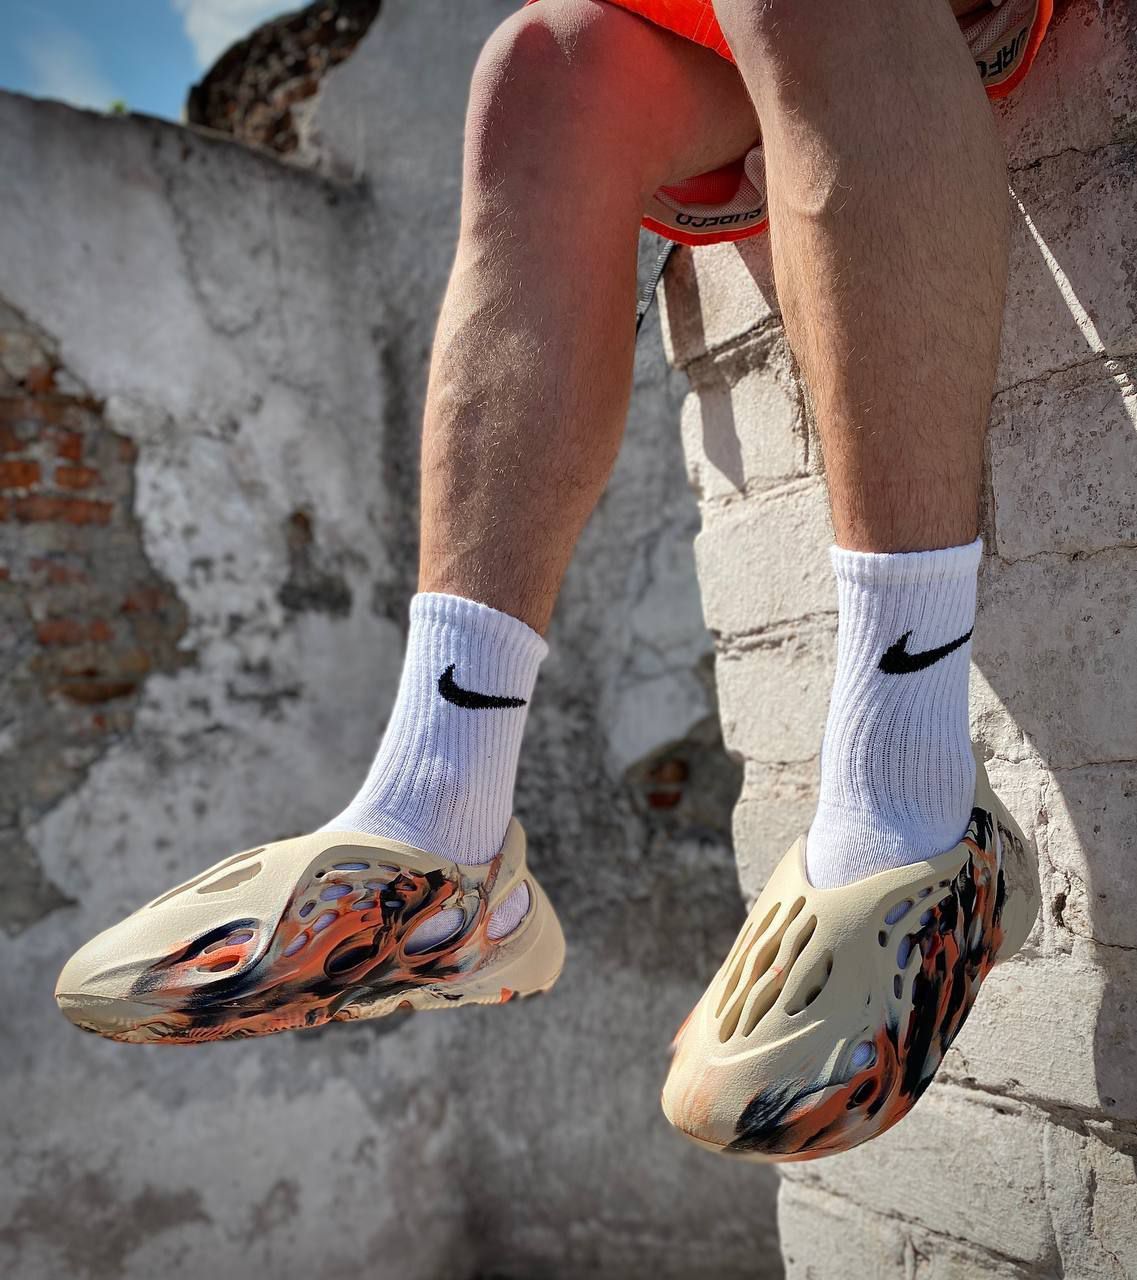 Чоловічі літні кросівки Yeezy Foam Runner beige orange (no logo)